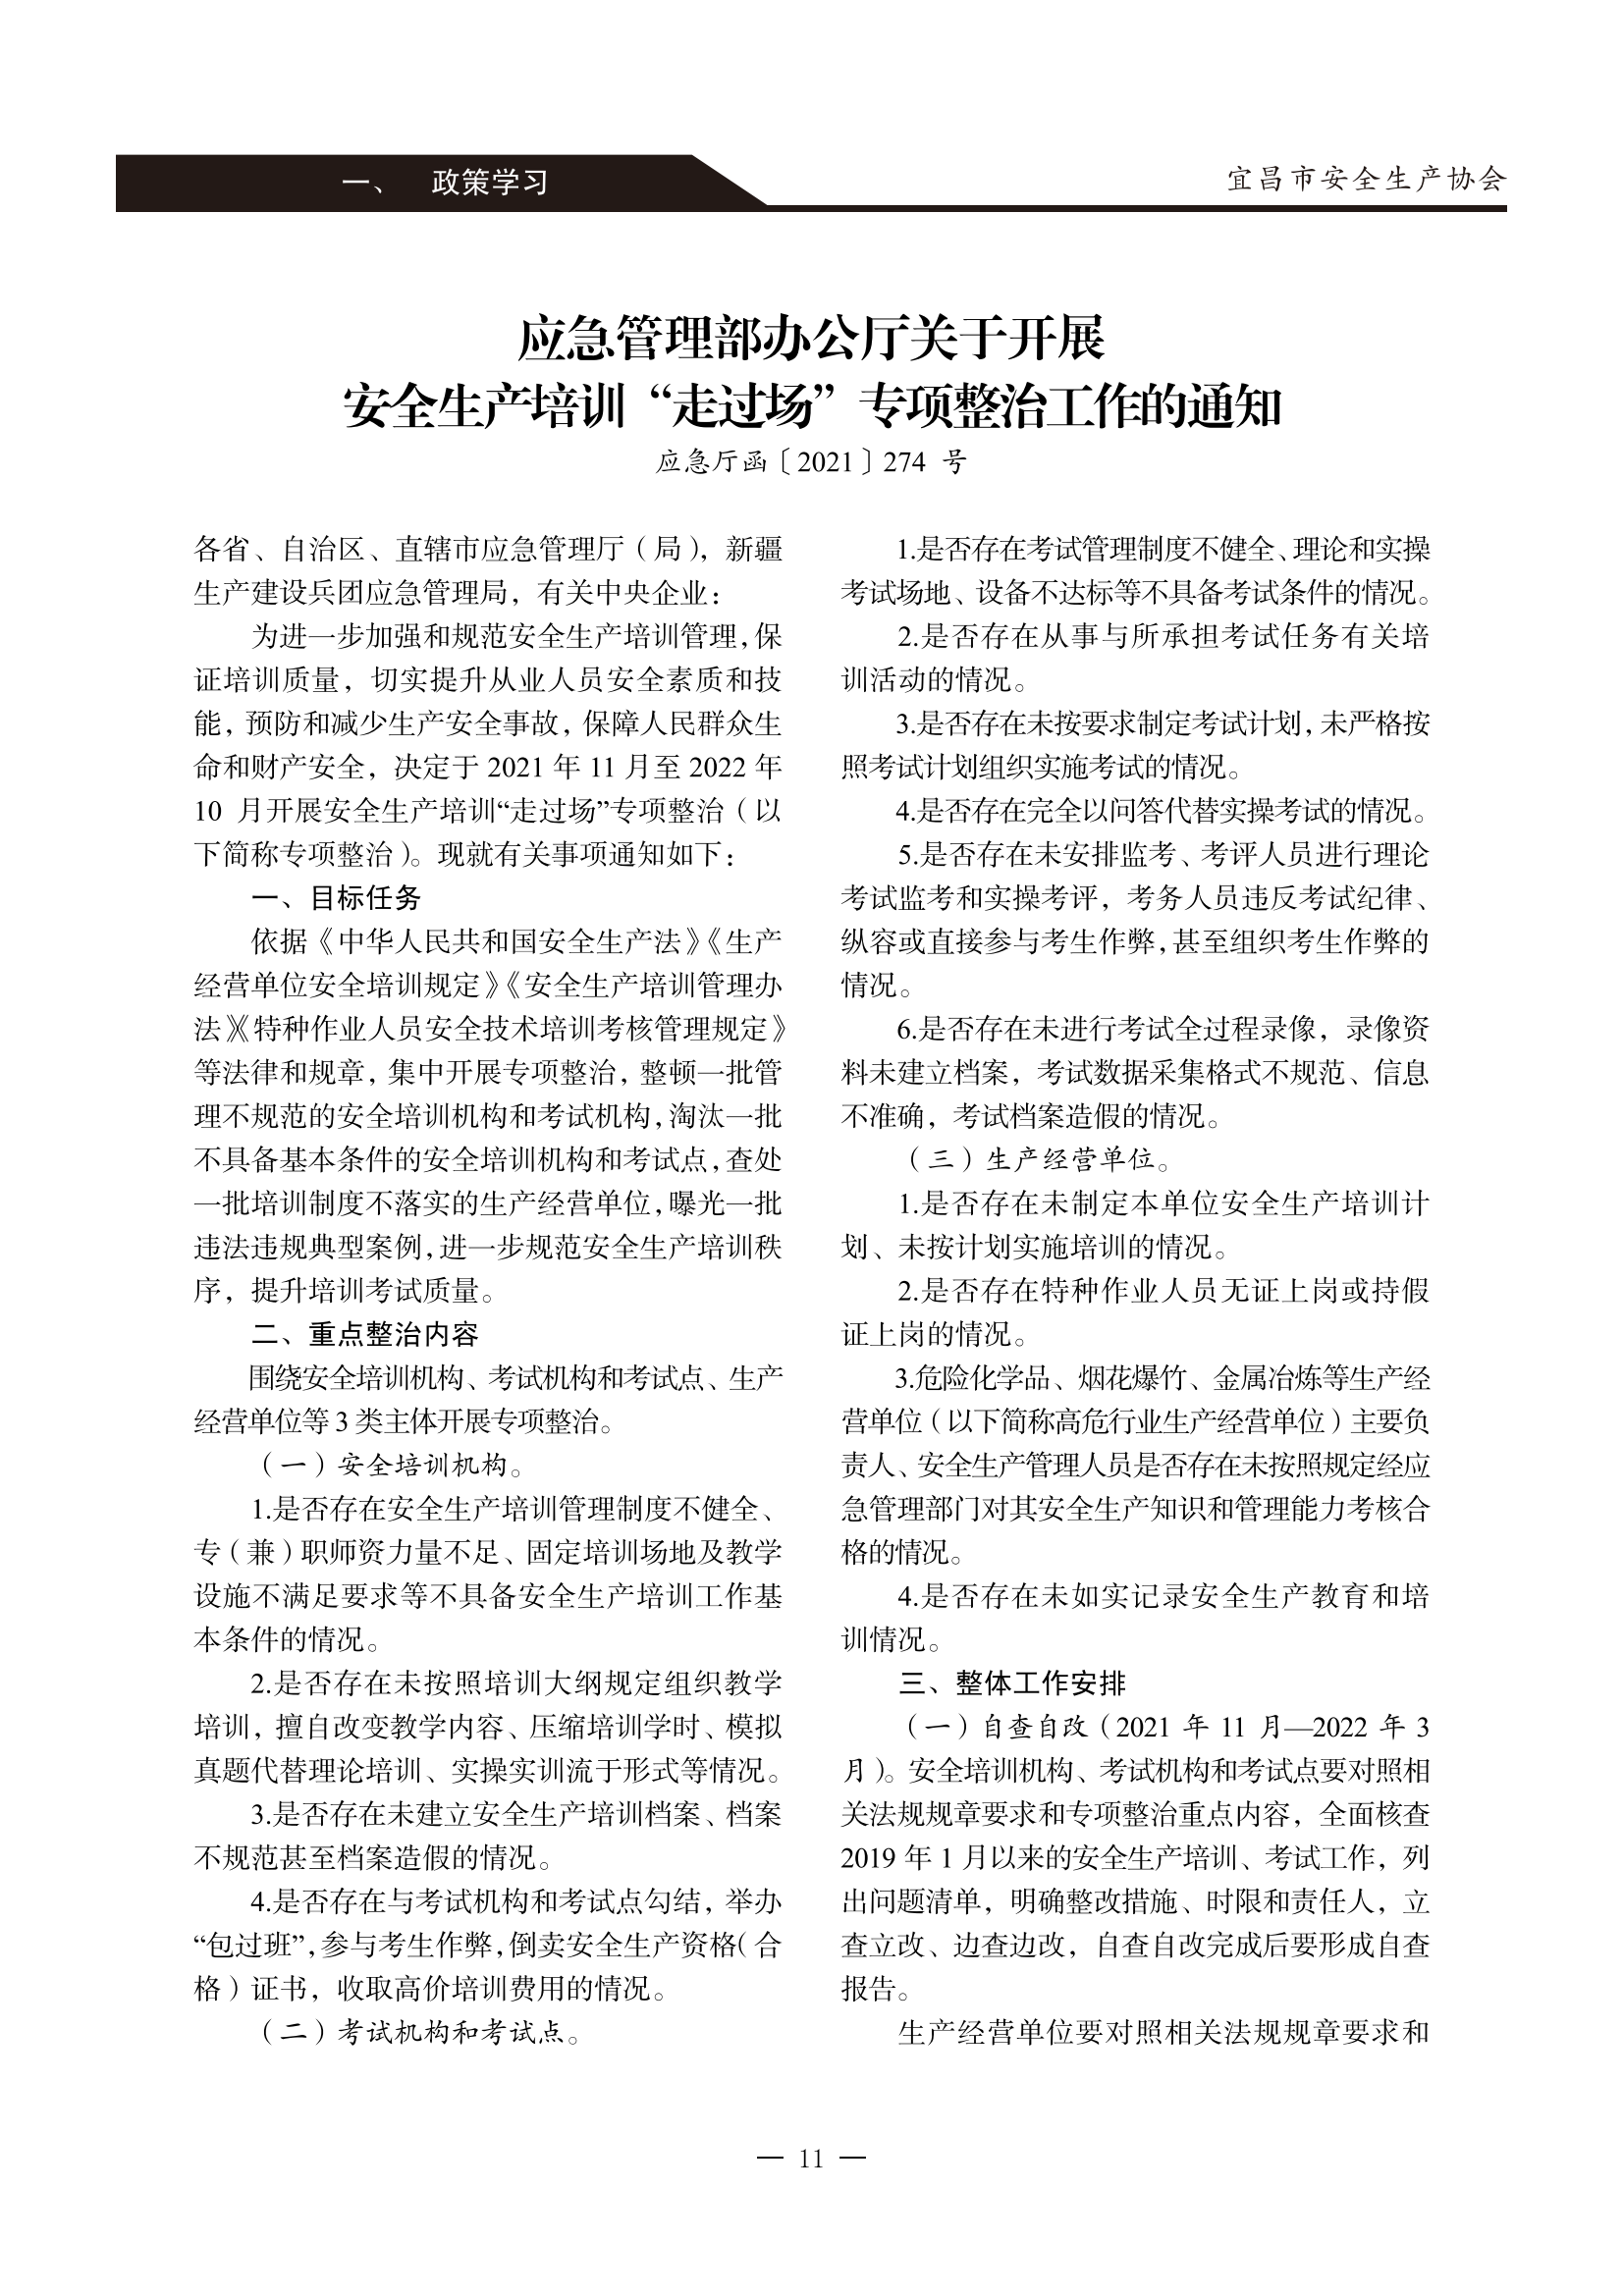 宜昌安全生产期刊第一期_16.png